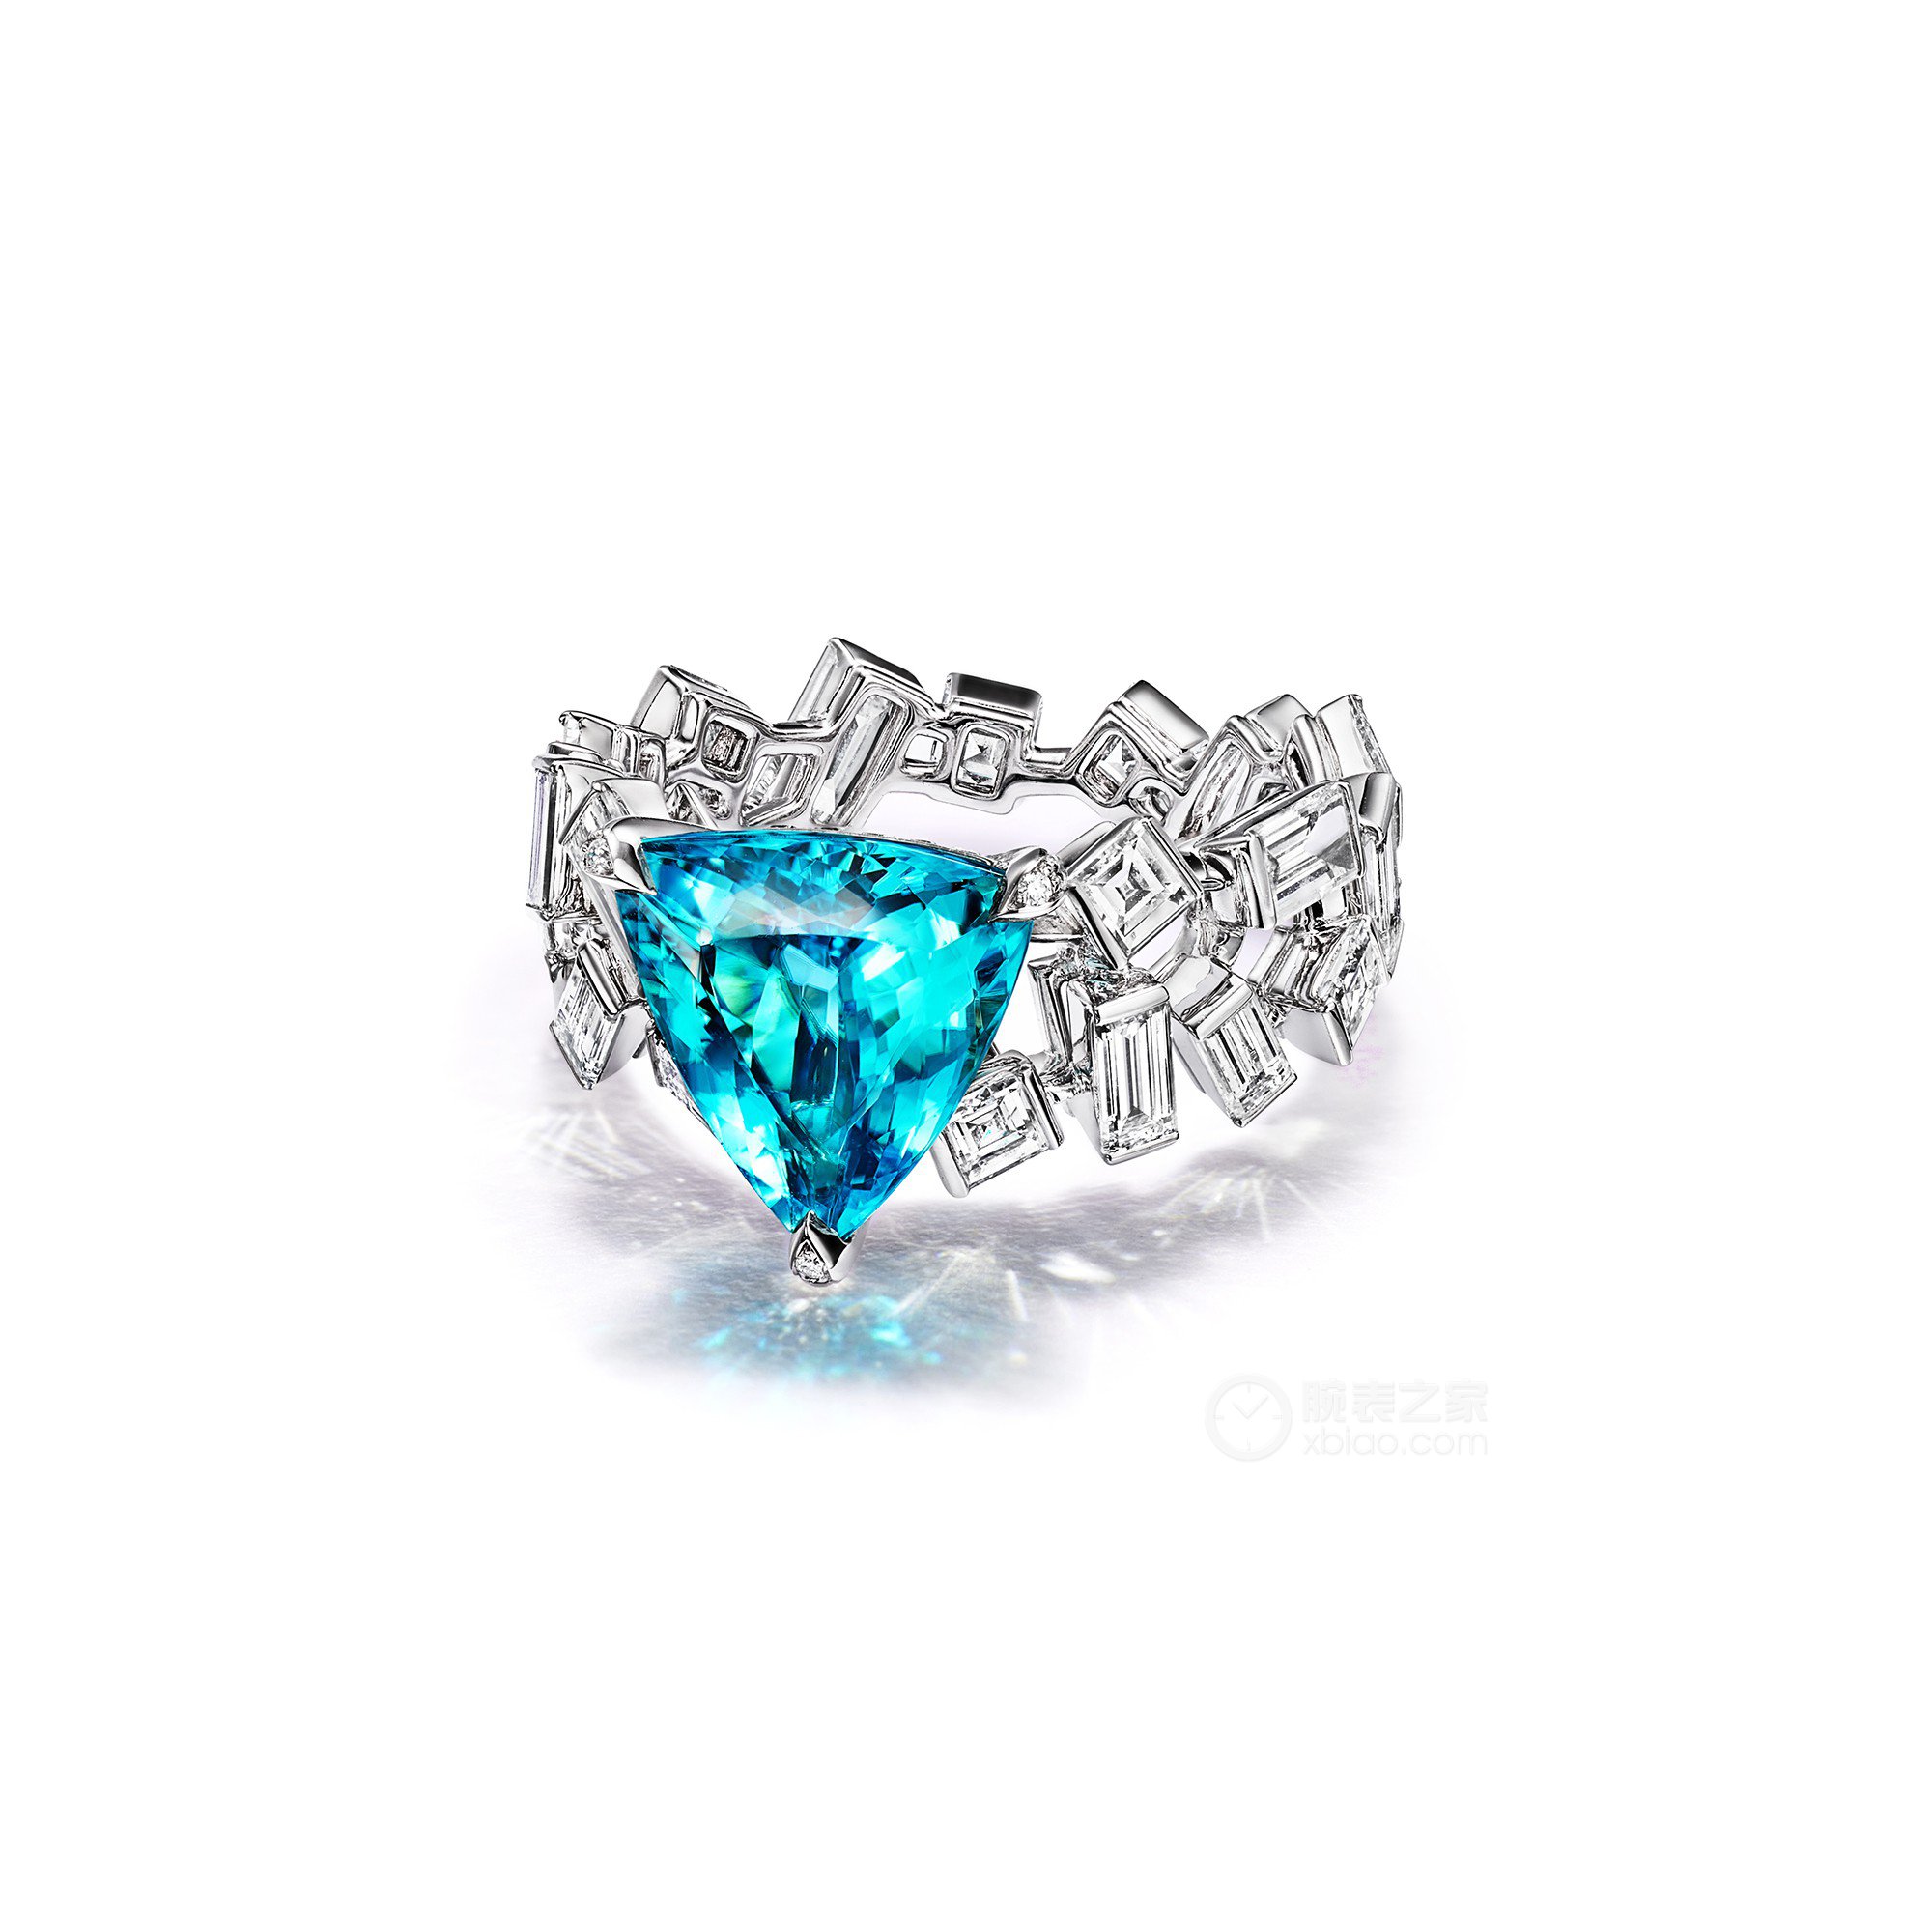 蒂芙尼BLUE BOOK高级珠宝18K白金镶嵌一颗重逾2克拉的帕拉依巴碧玺及钻石戒指戒指